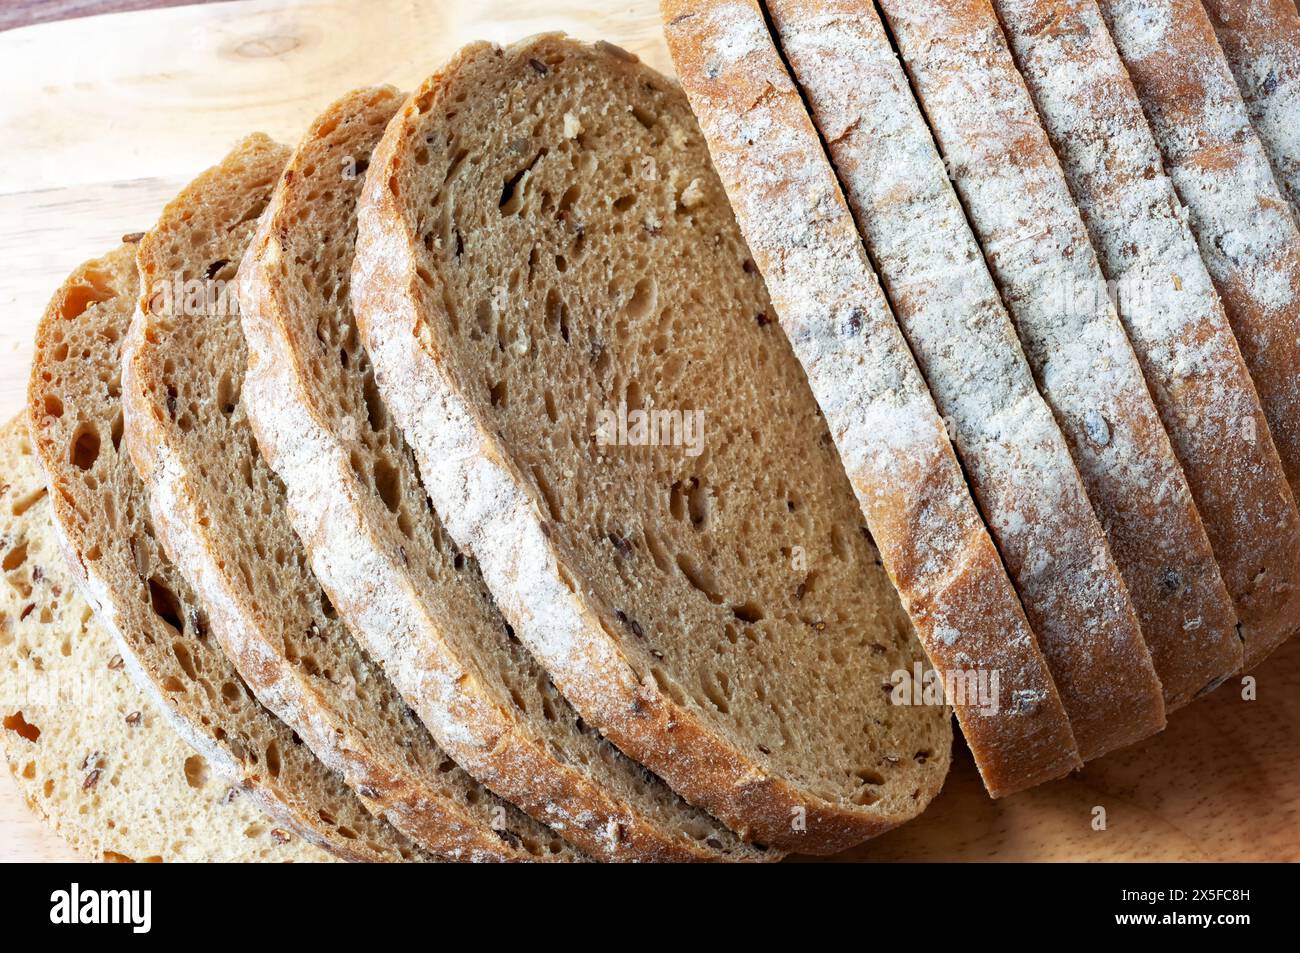 Close up of multigrain bread slices Stock Photo